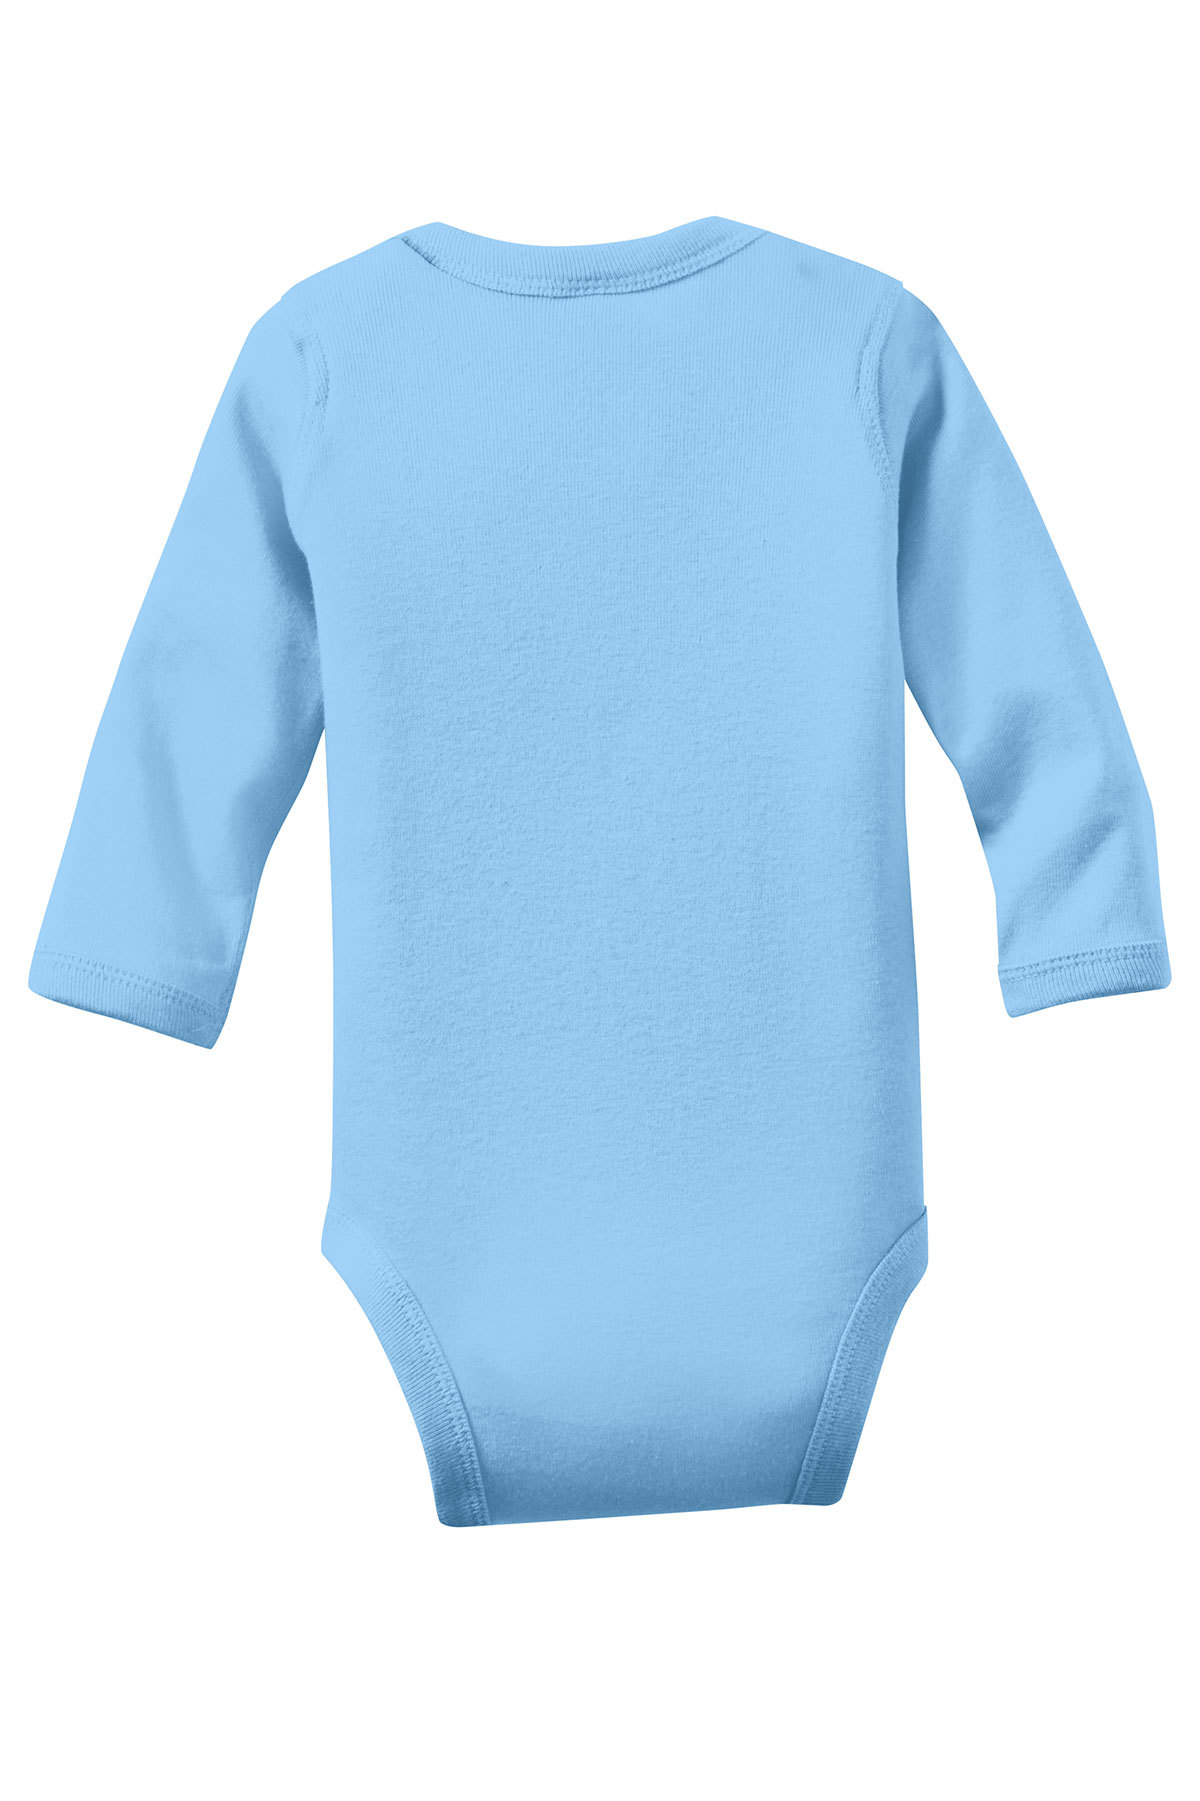 Details about   New CuteOn Newborn Infant Unisex Turtleneck Bodysuit Jumpsuit Size 18M Blue 